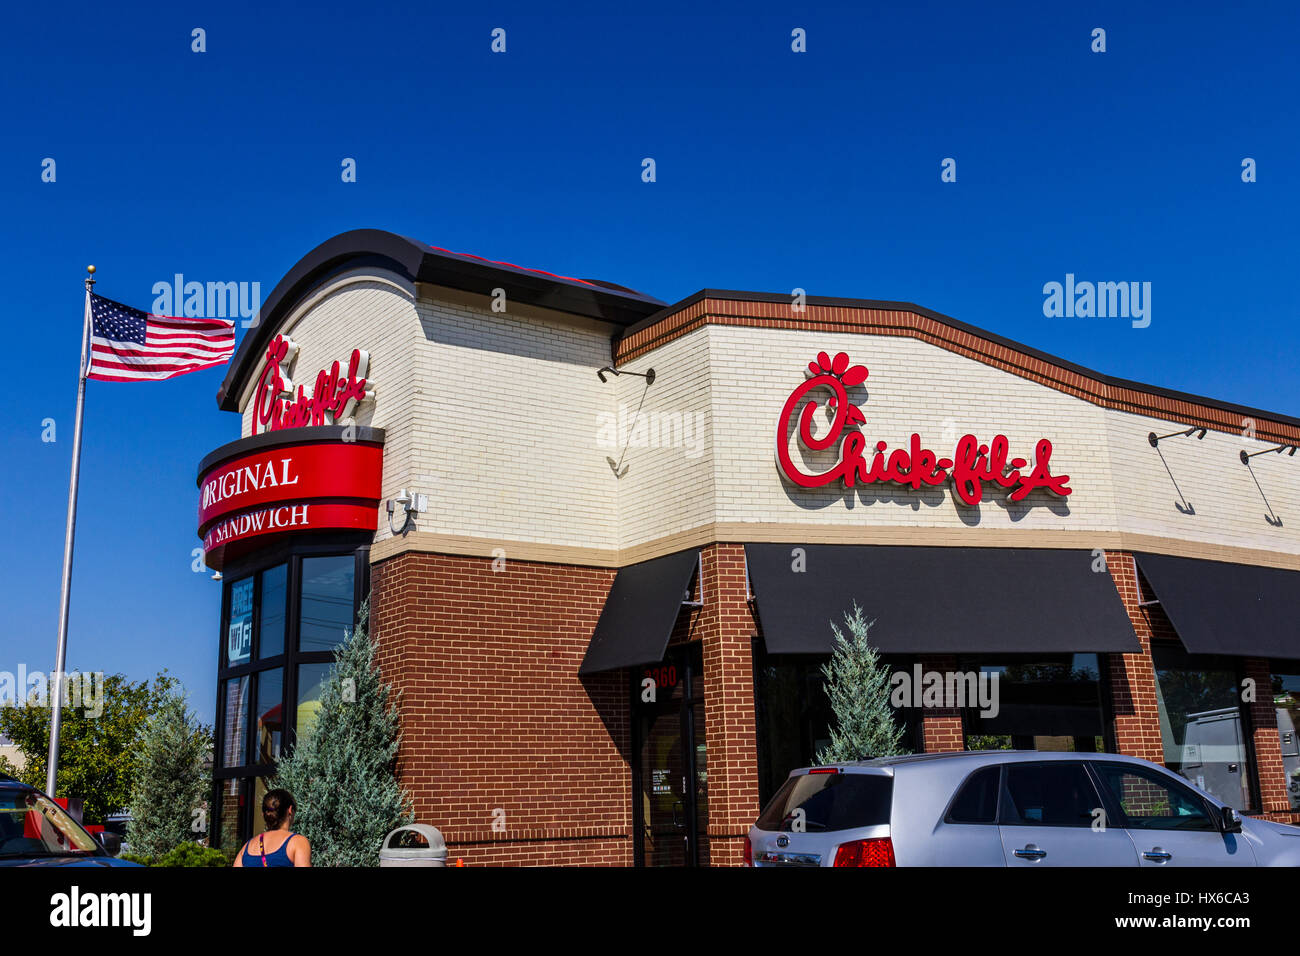 Indianapolis - Circa Septiembre 2016: Chick-fil-A Minoristas Ubicación de comida rápida. Chick-fil-A restaurantes cierran los domingos II Foto de stock